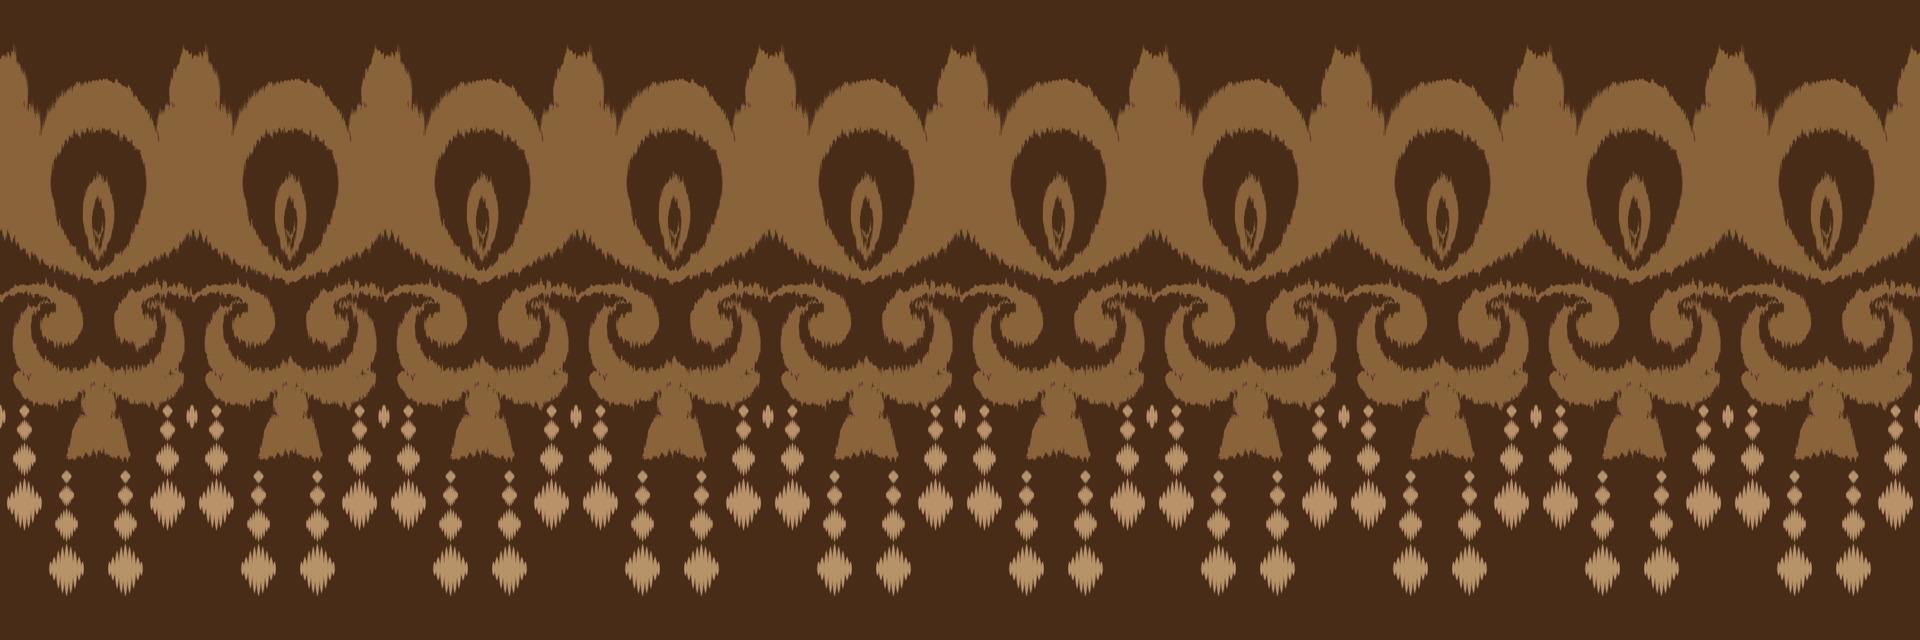 batik têxtil filipino ikat padrão sem costura design de vetor digital para impressão saree kurti borneo tecido borda escova símbolos amostras roupas de festa